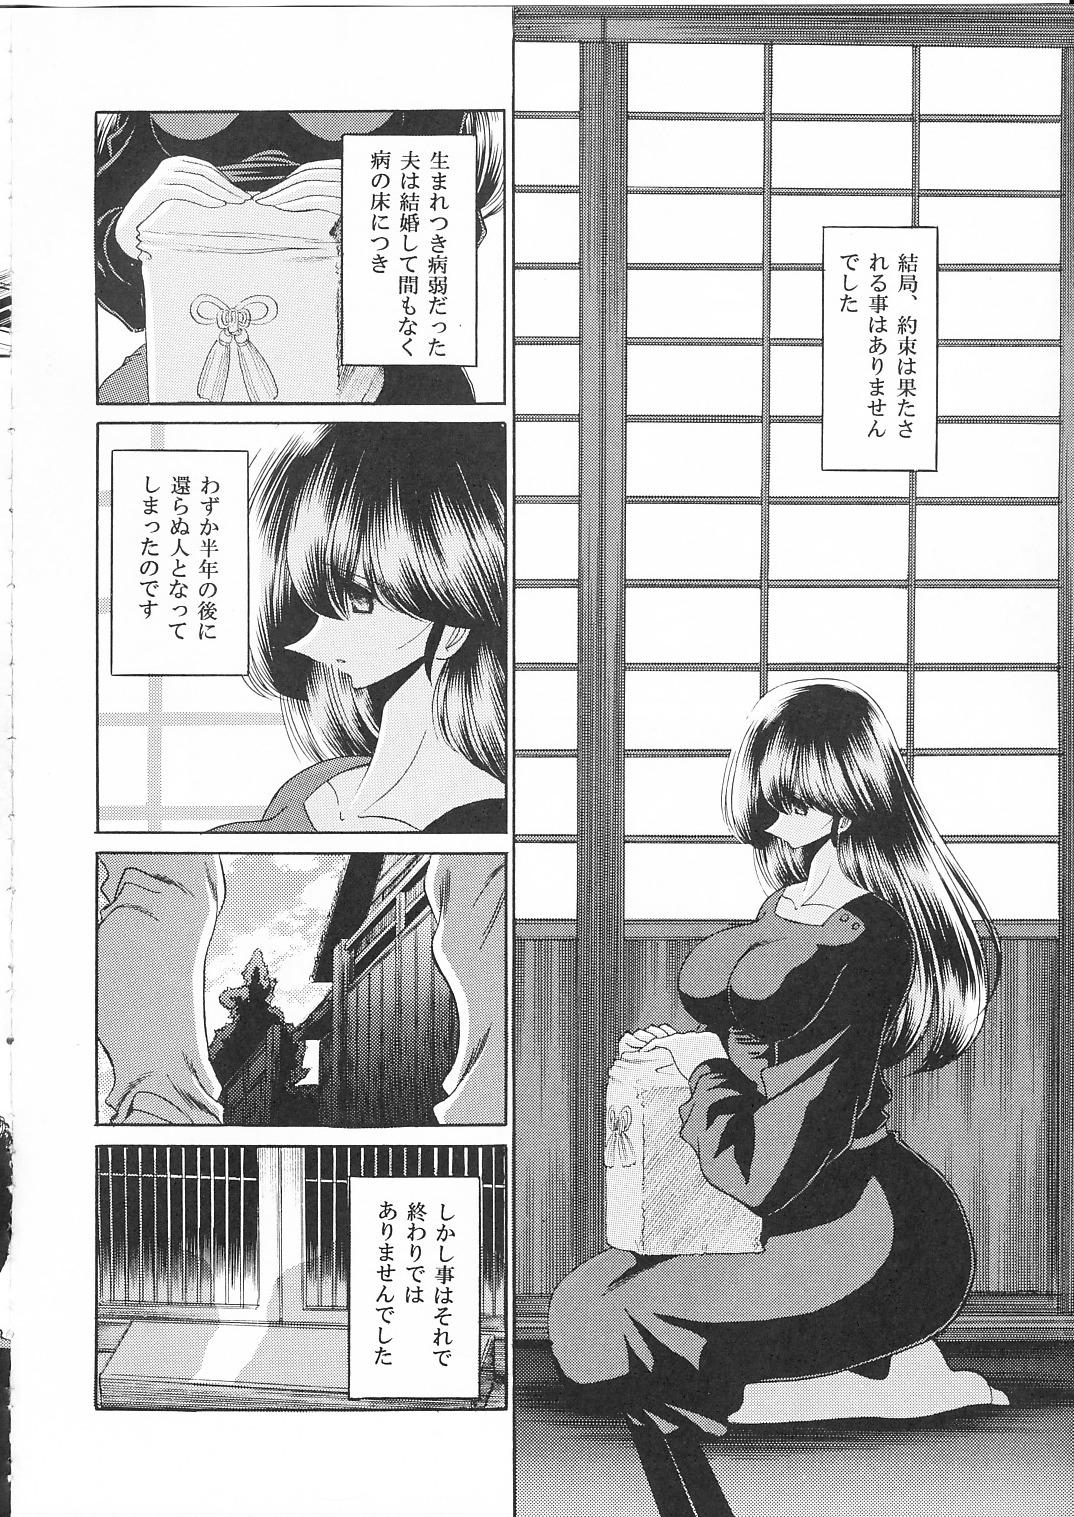  Ikkokukan Kanri Nisshi - Maison ikkoku 1080p - Page 7